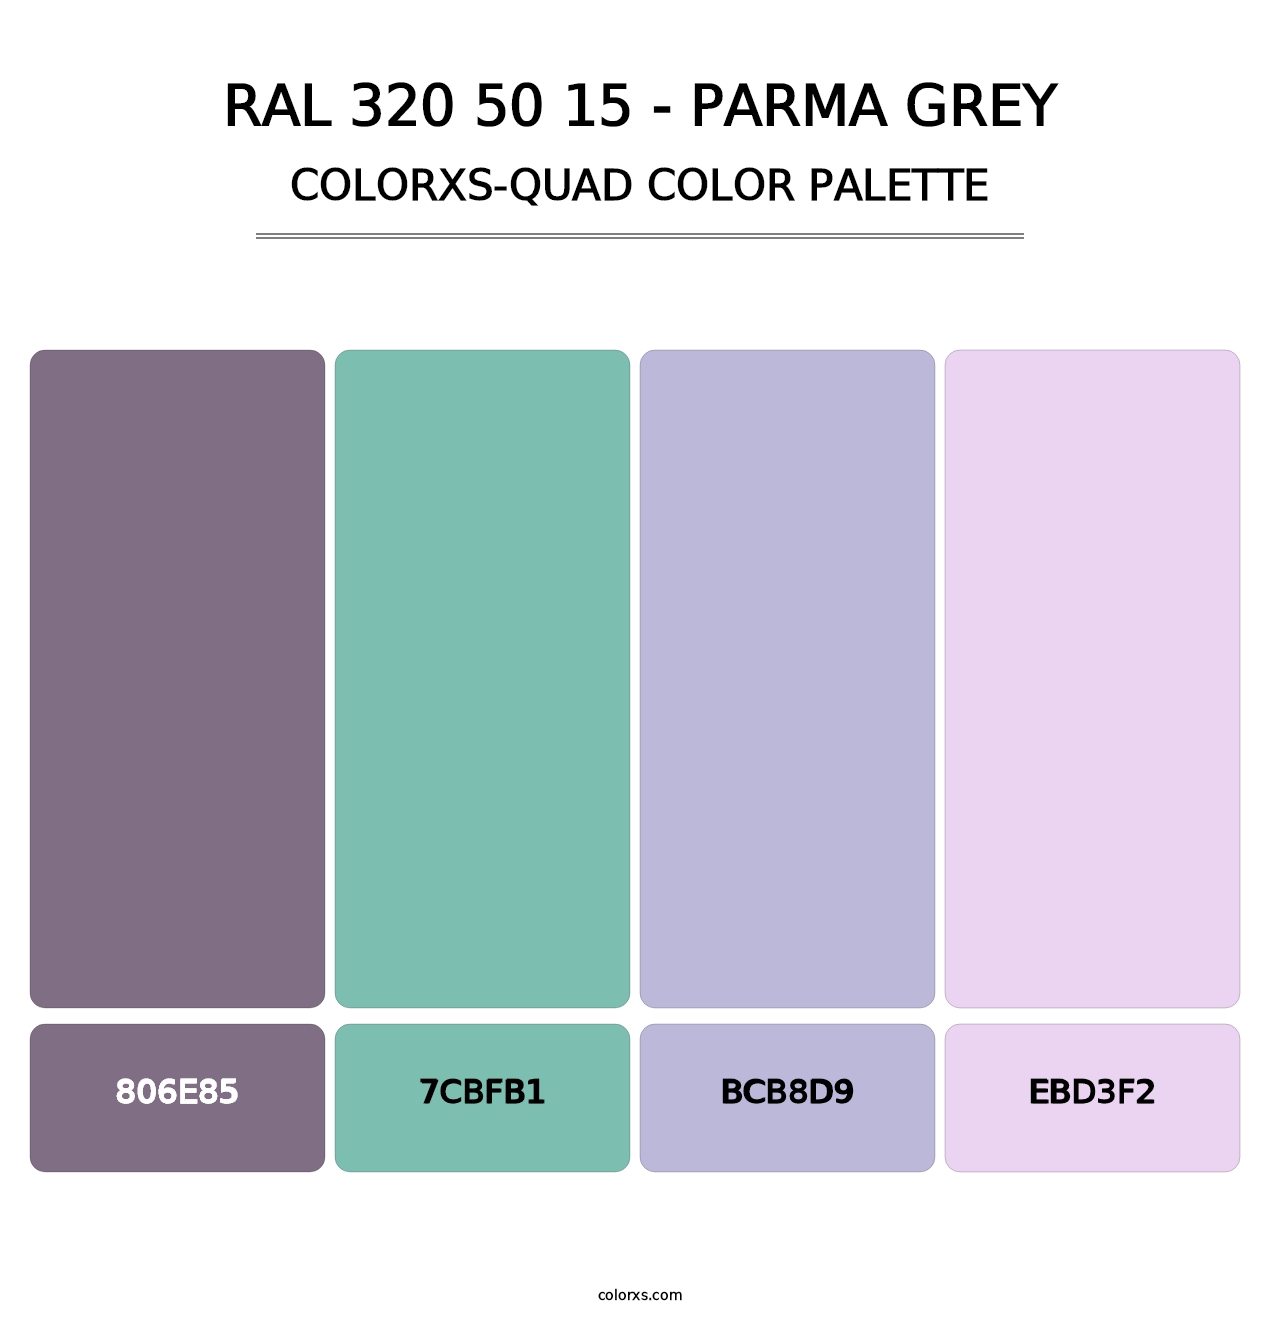 RAL 320 50 15 - Parma Grey - Colorxs Quad Palette